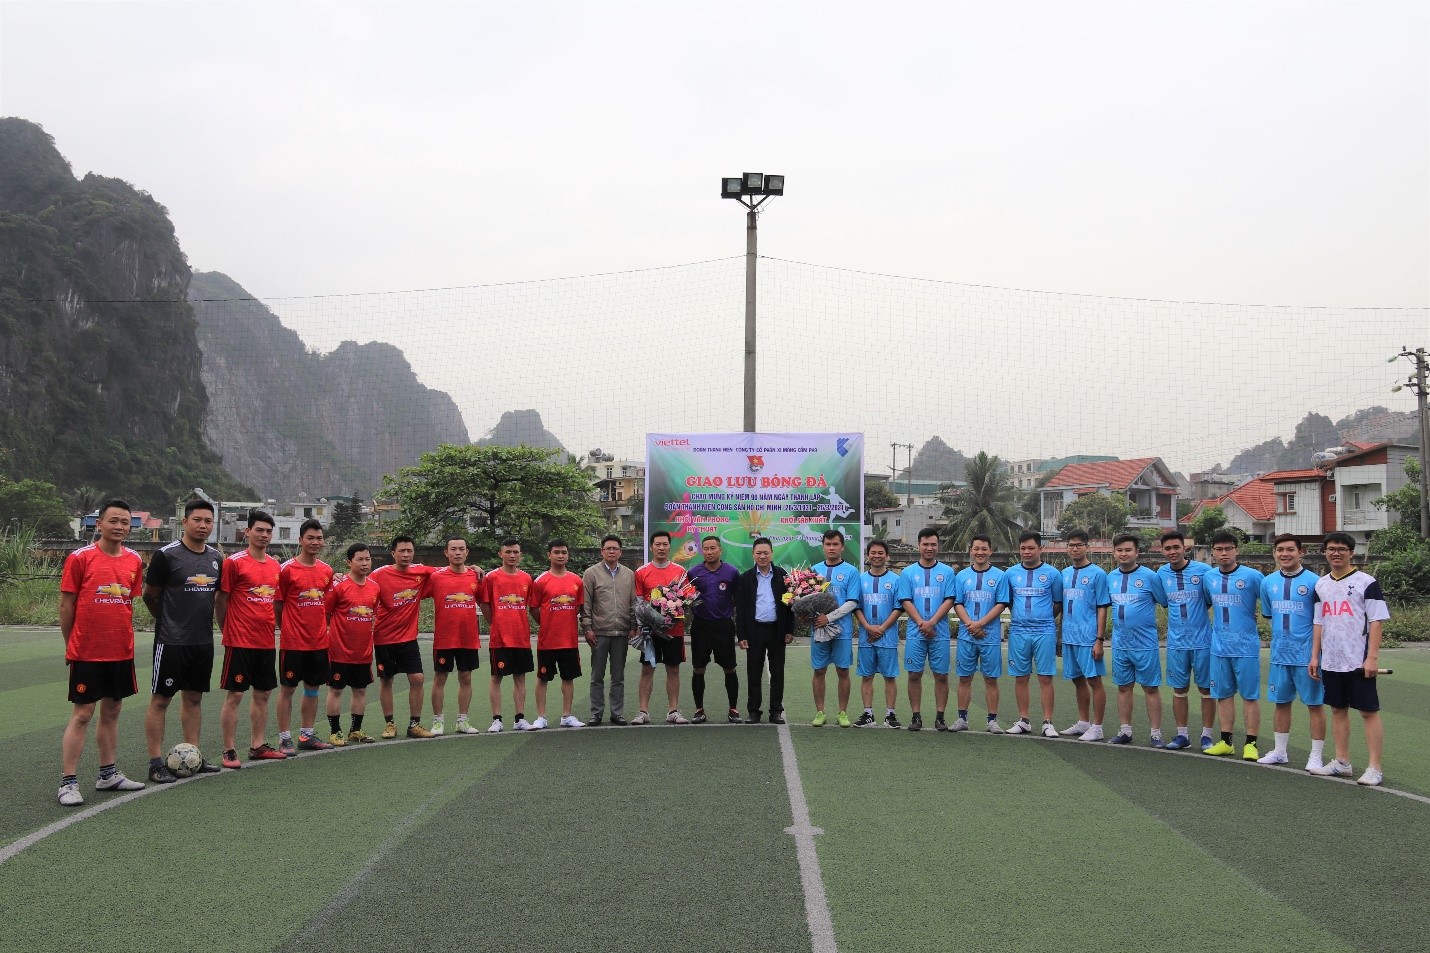 Giao hữu bóng đá nội bộ chào mừng kỷ niệm 90 năm thành lập Đoàn Thanh niên Cộng sản Hồ Chí Minh